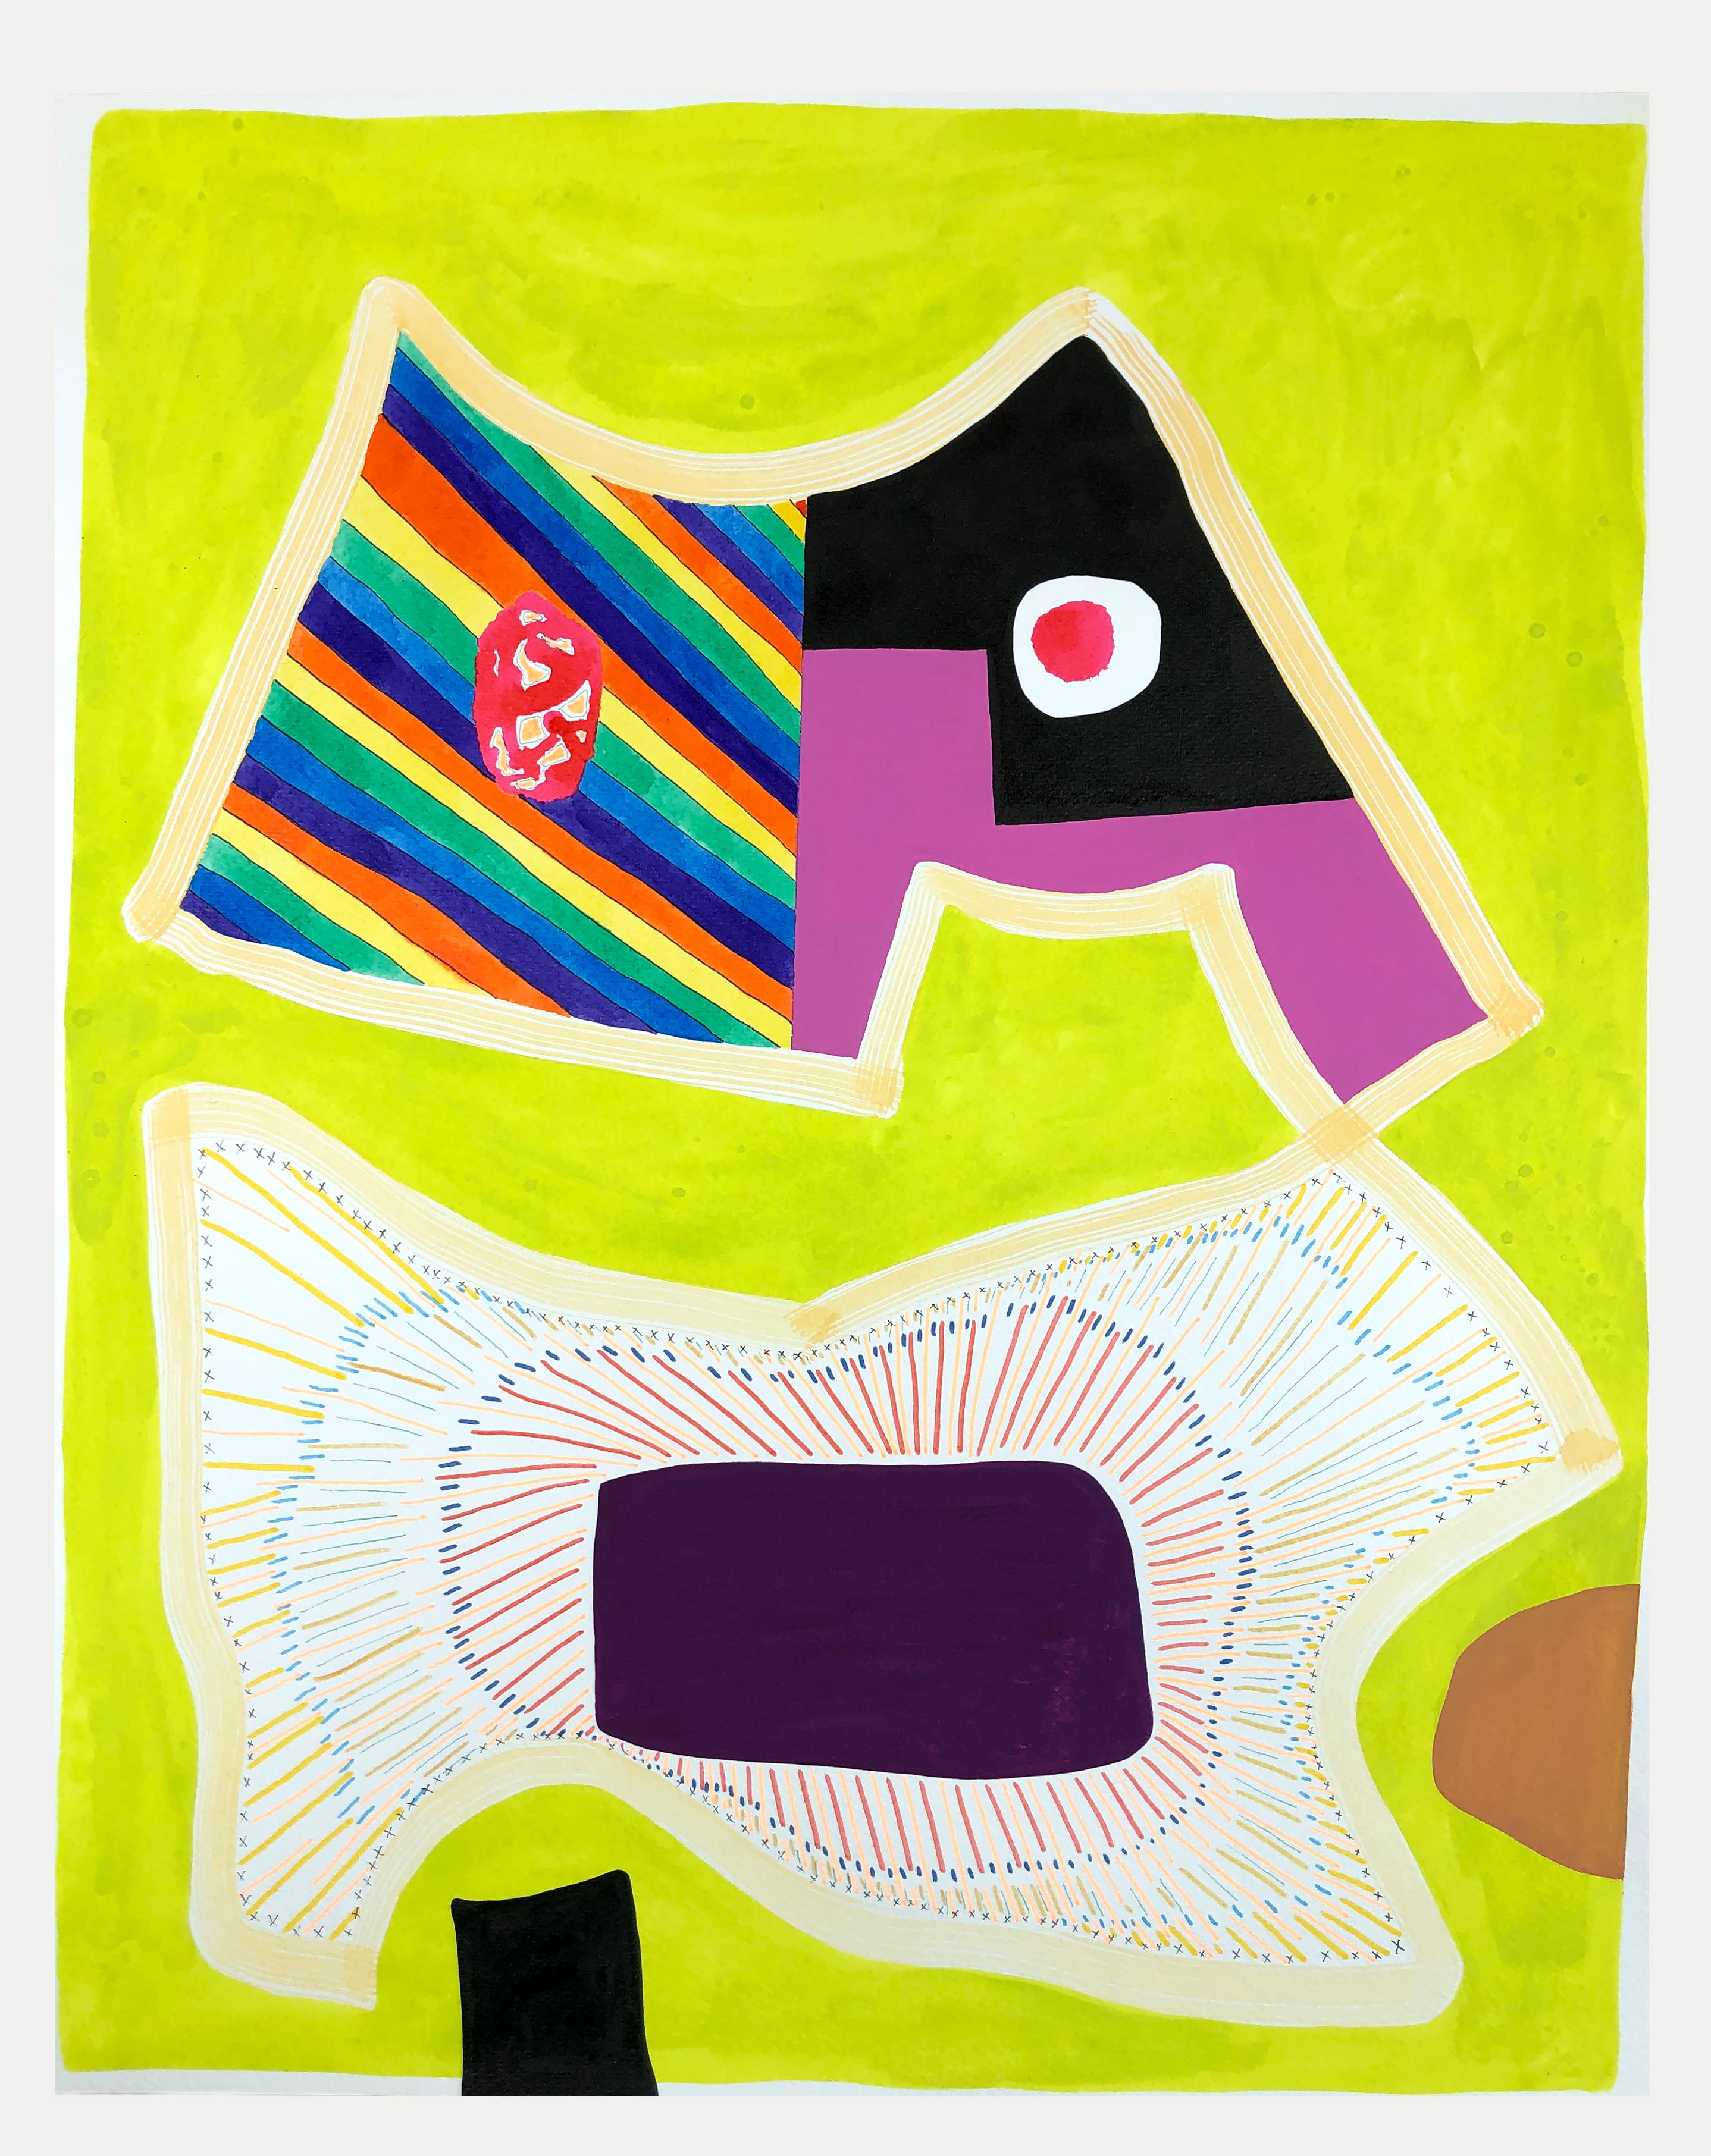 Peinture abstraite contemporaine à motifs géométriques colorés sans titre (PPR 348) - Painting de Max Manning